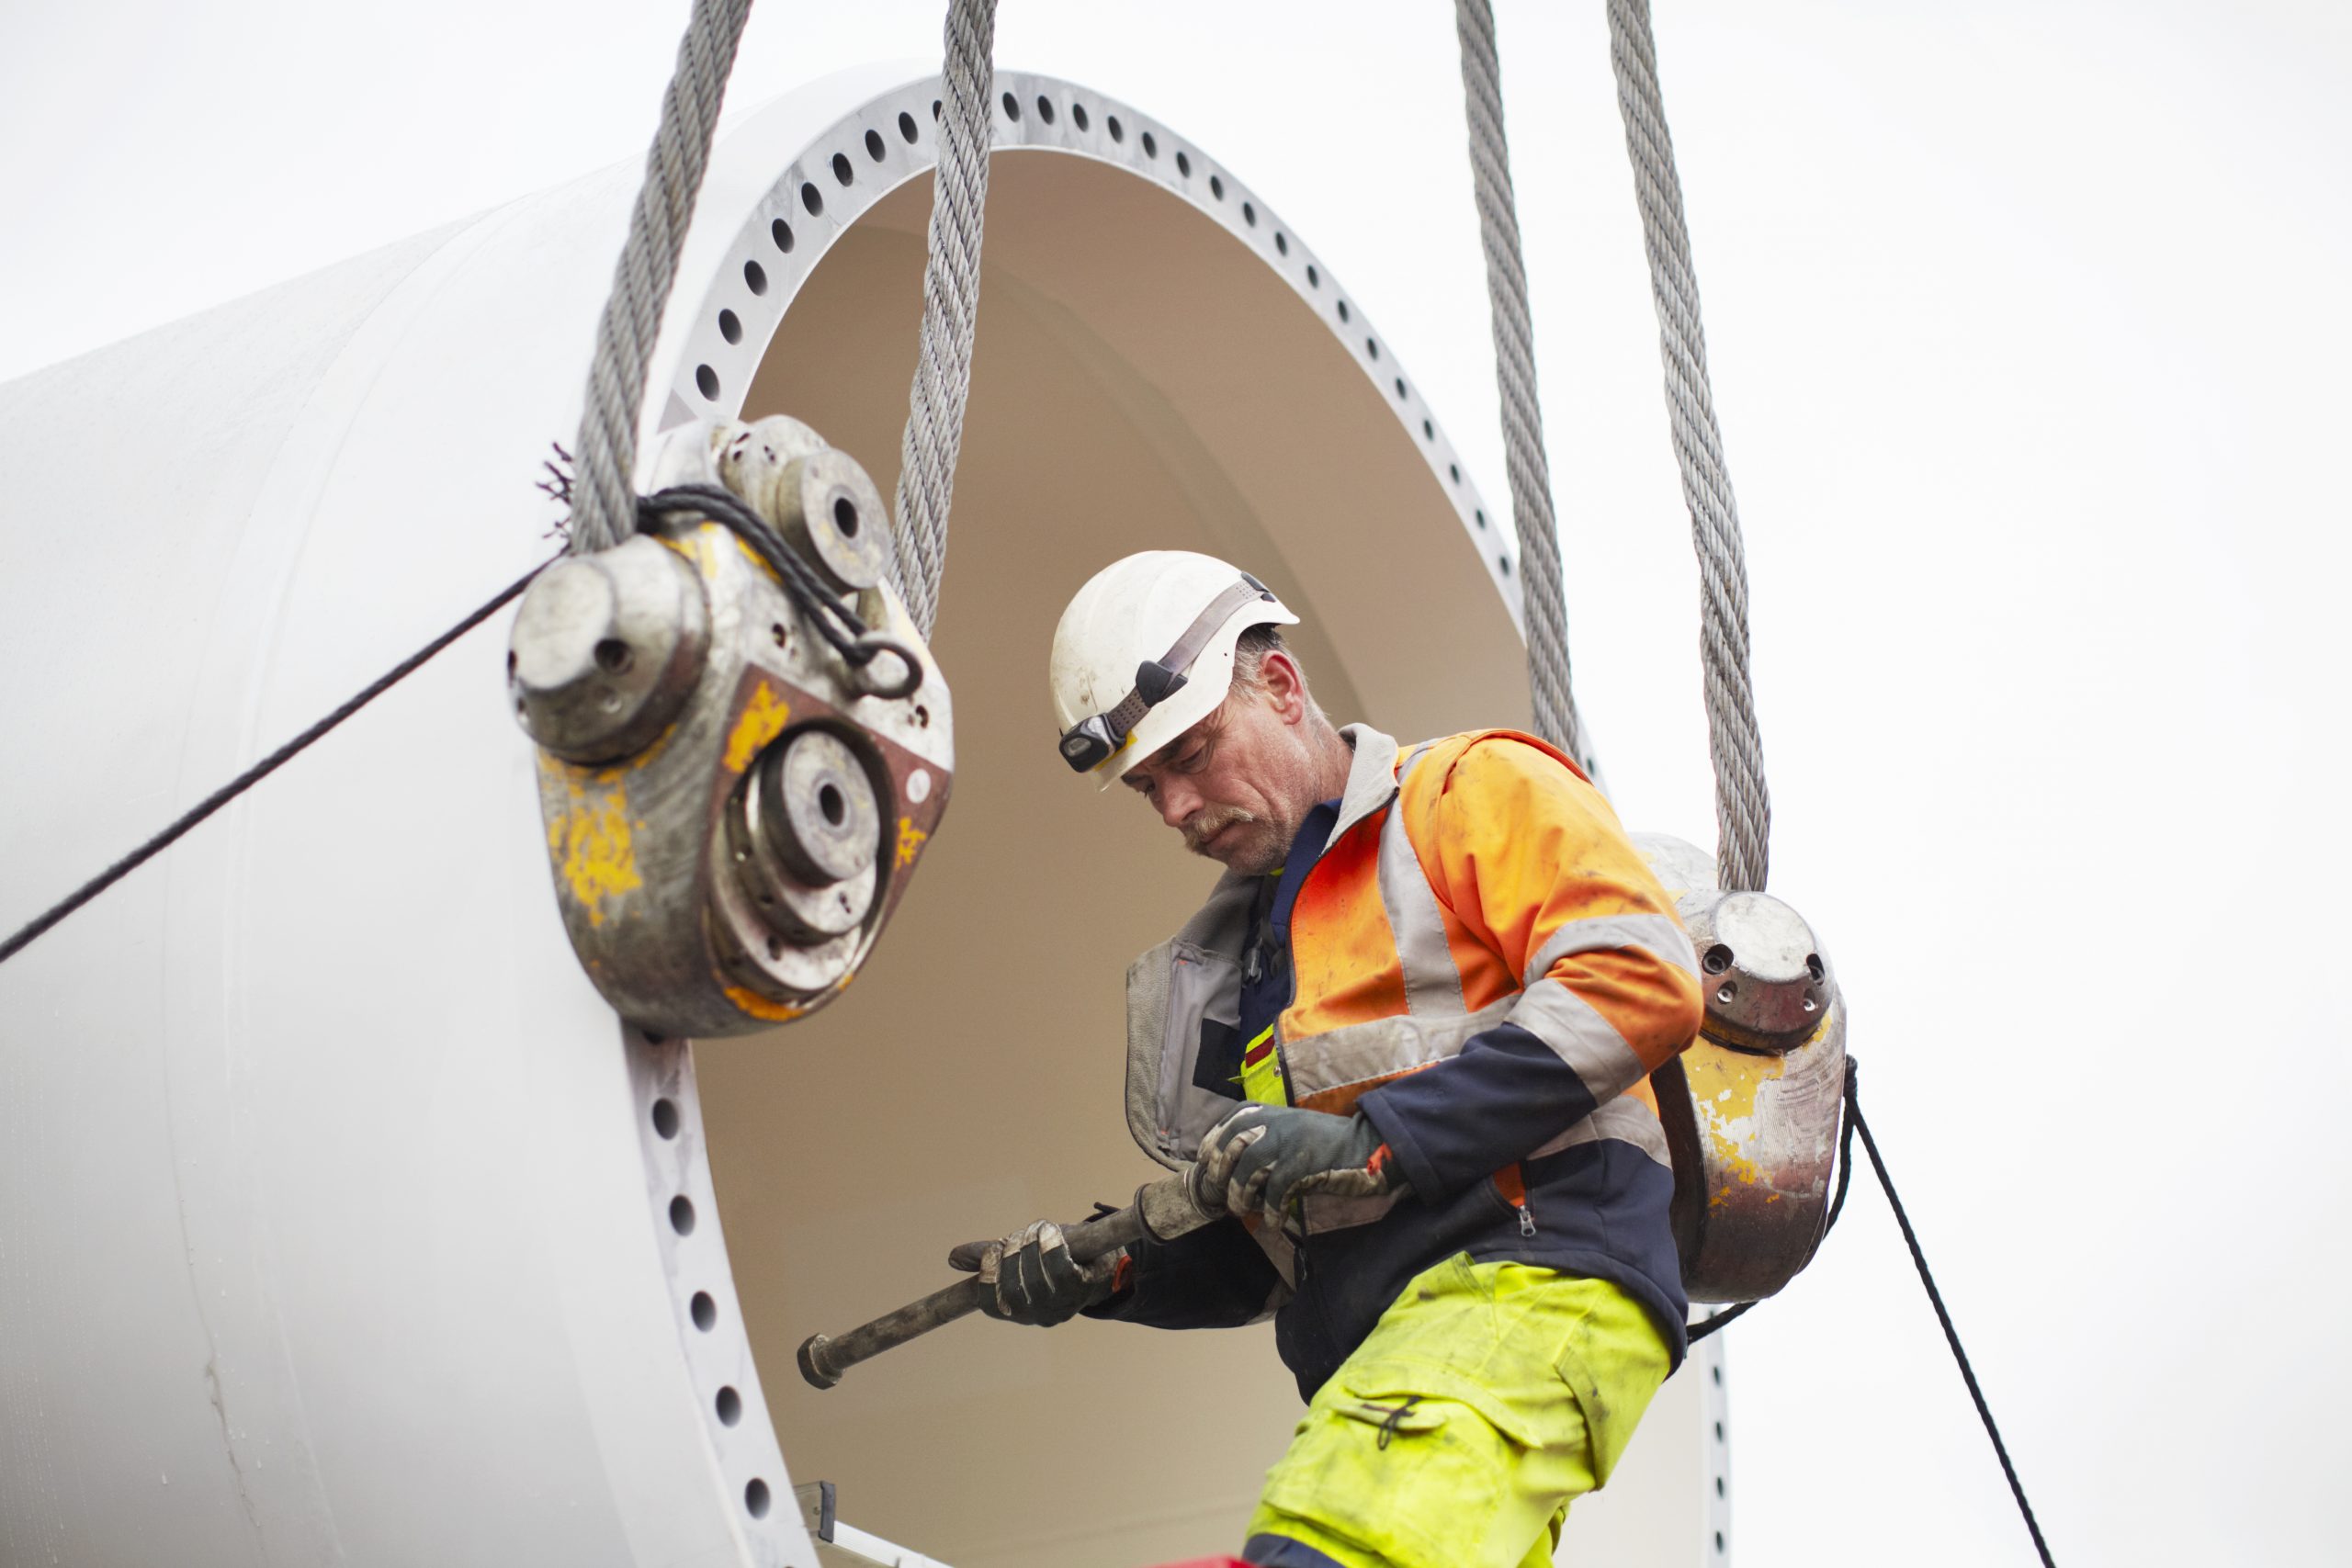 Engineer working on wind turbine